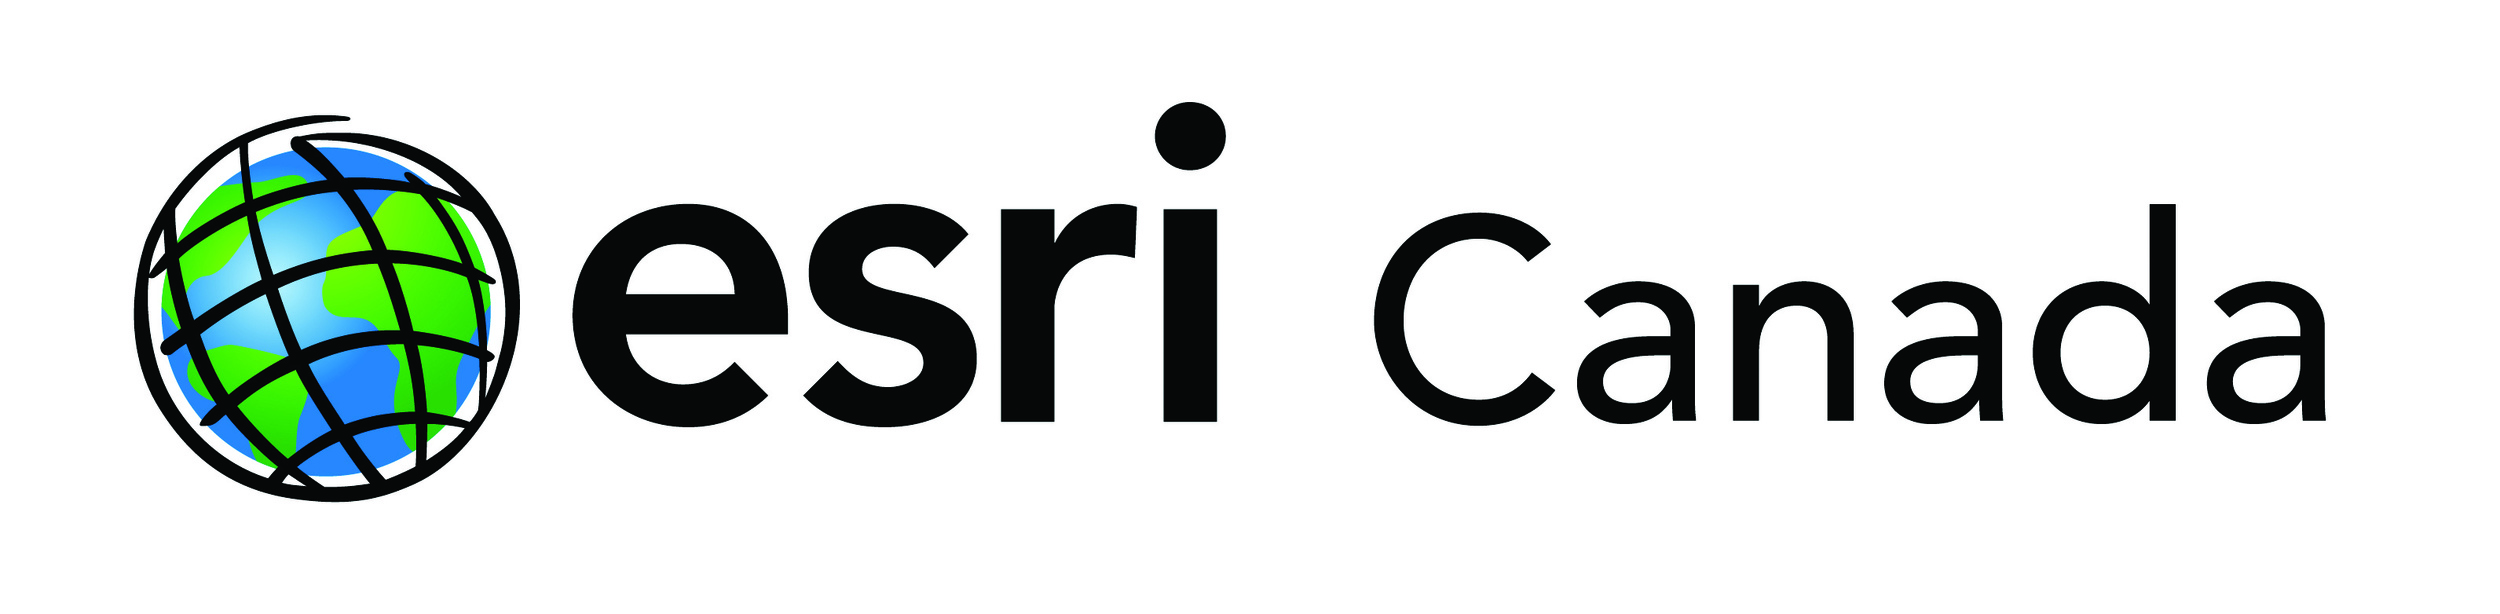 Esri_Canada_Logo_CMYK.jpg